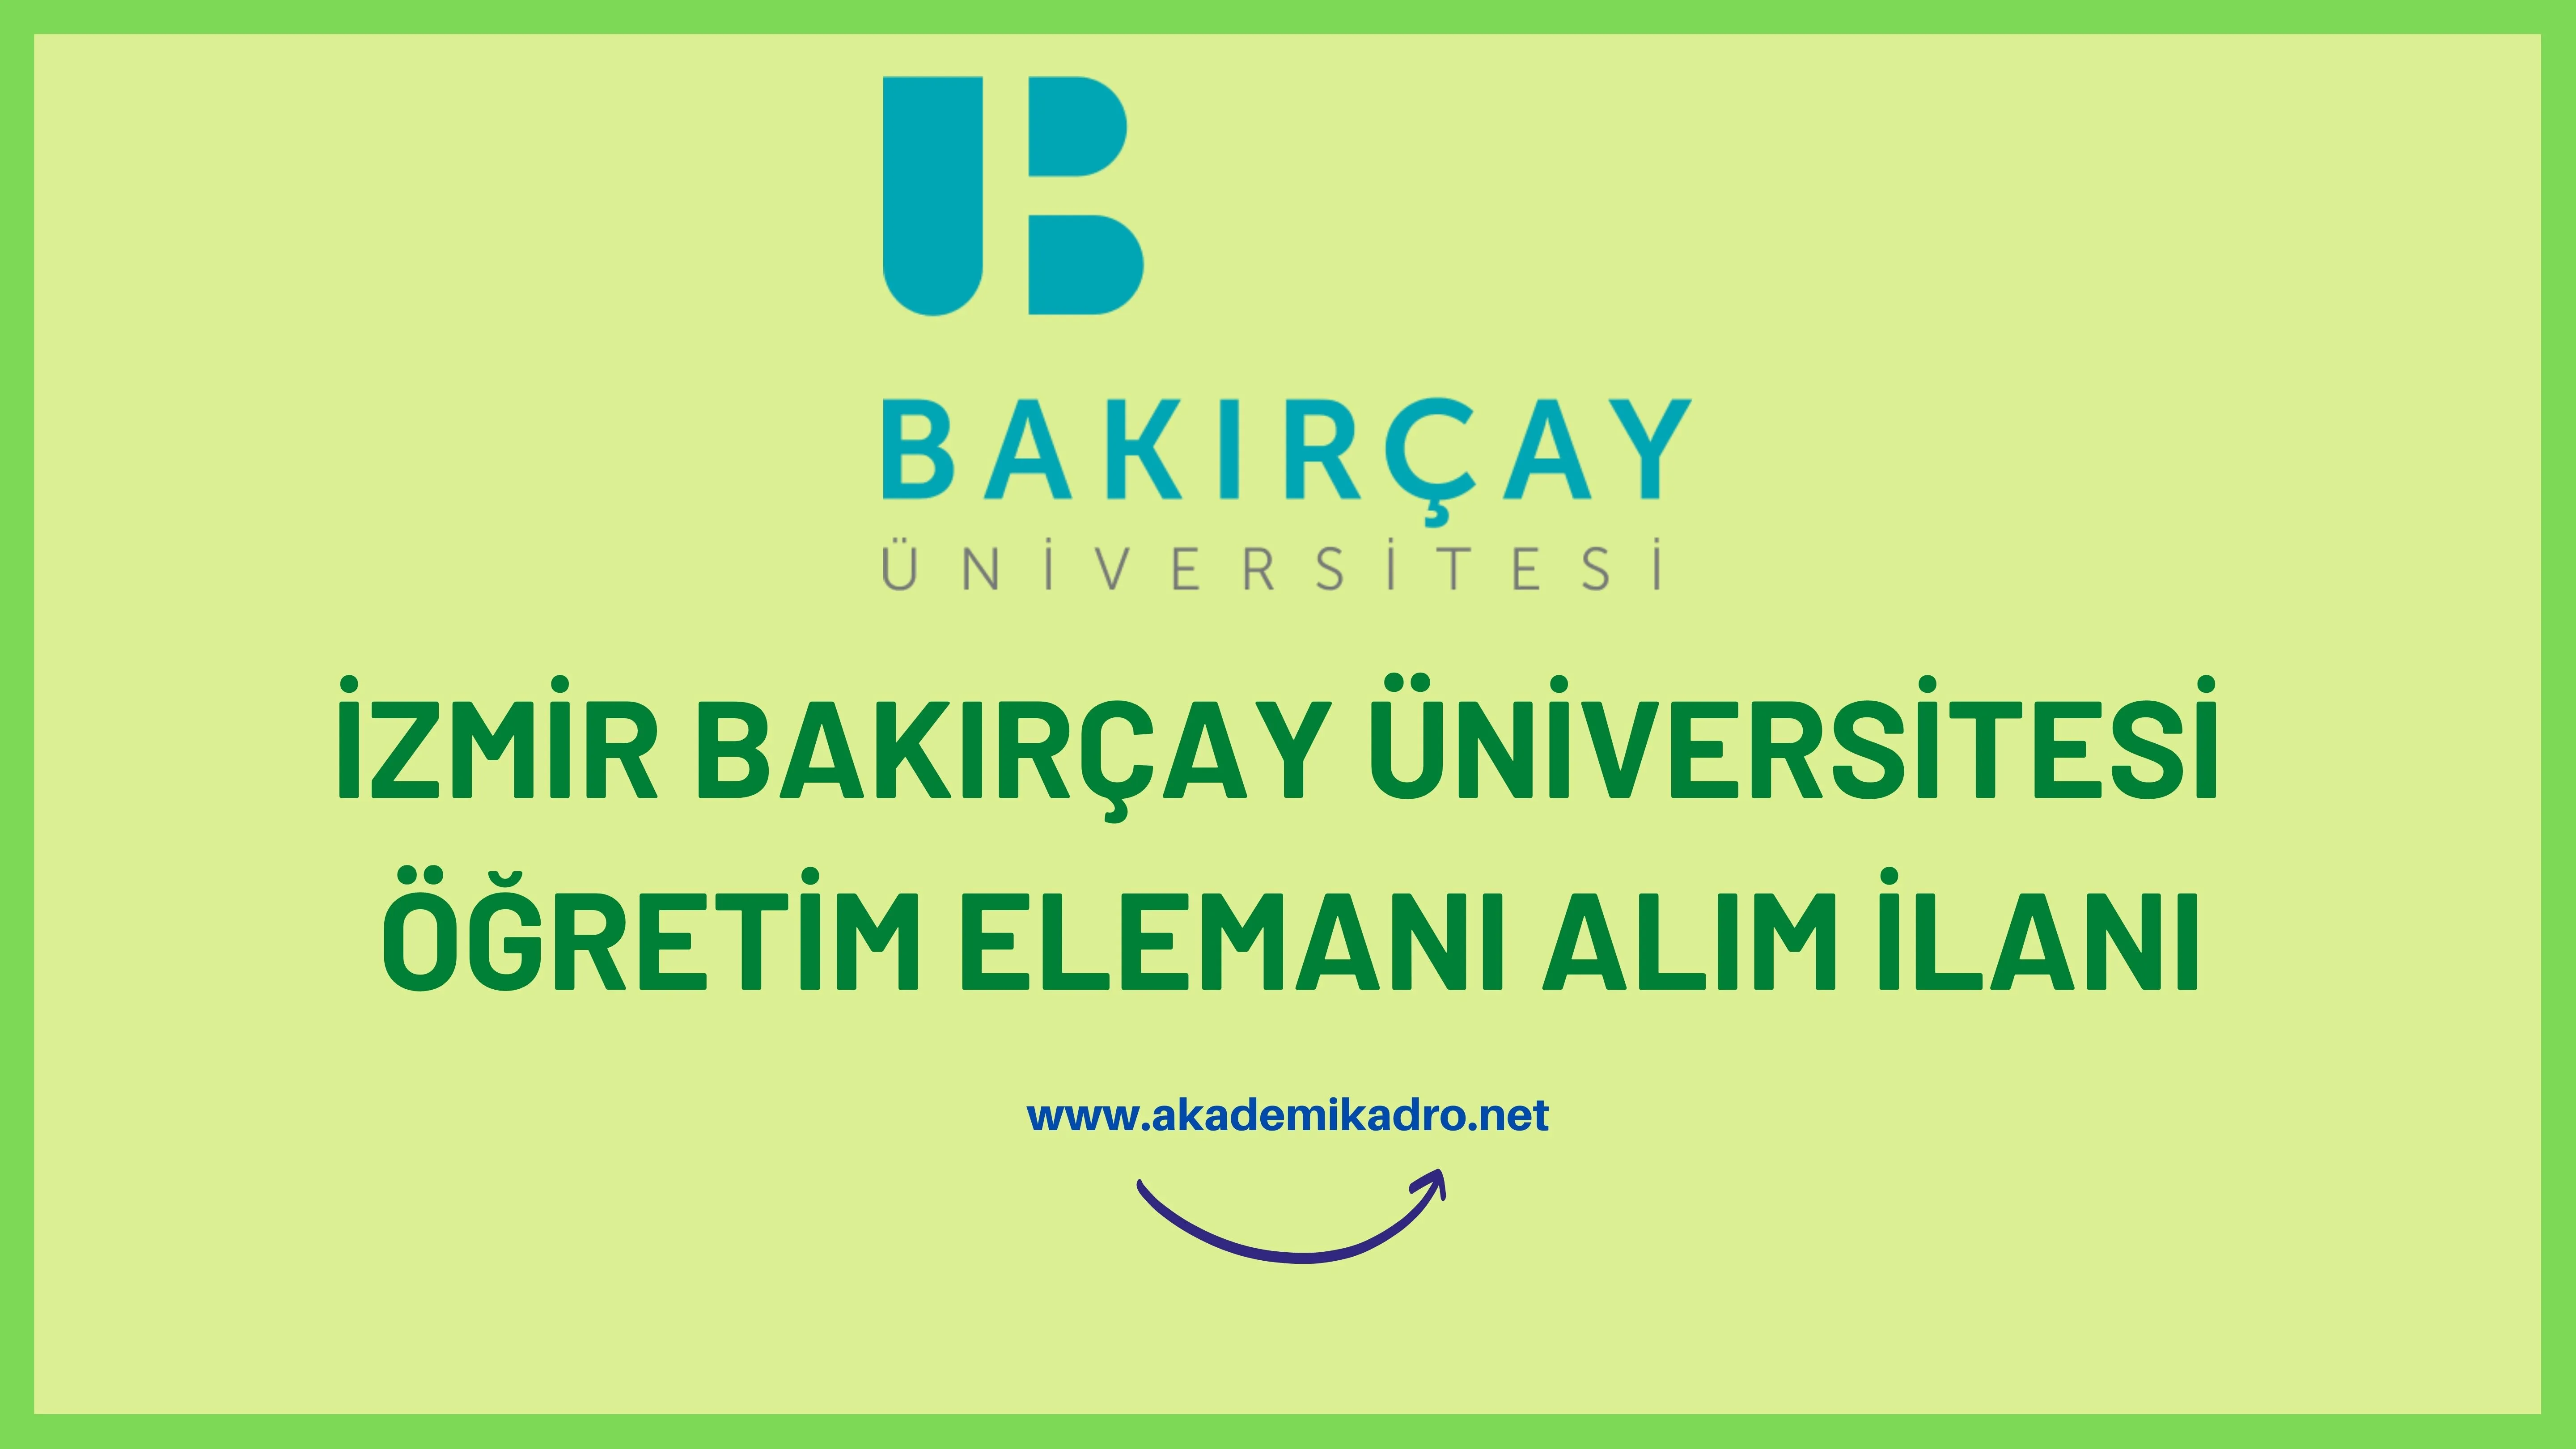 İzmir Bakırçay Üniversitesi birçok alandan 13 akademik personel alacak.Son başvuru tarihi 31 Ekim 2022.